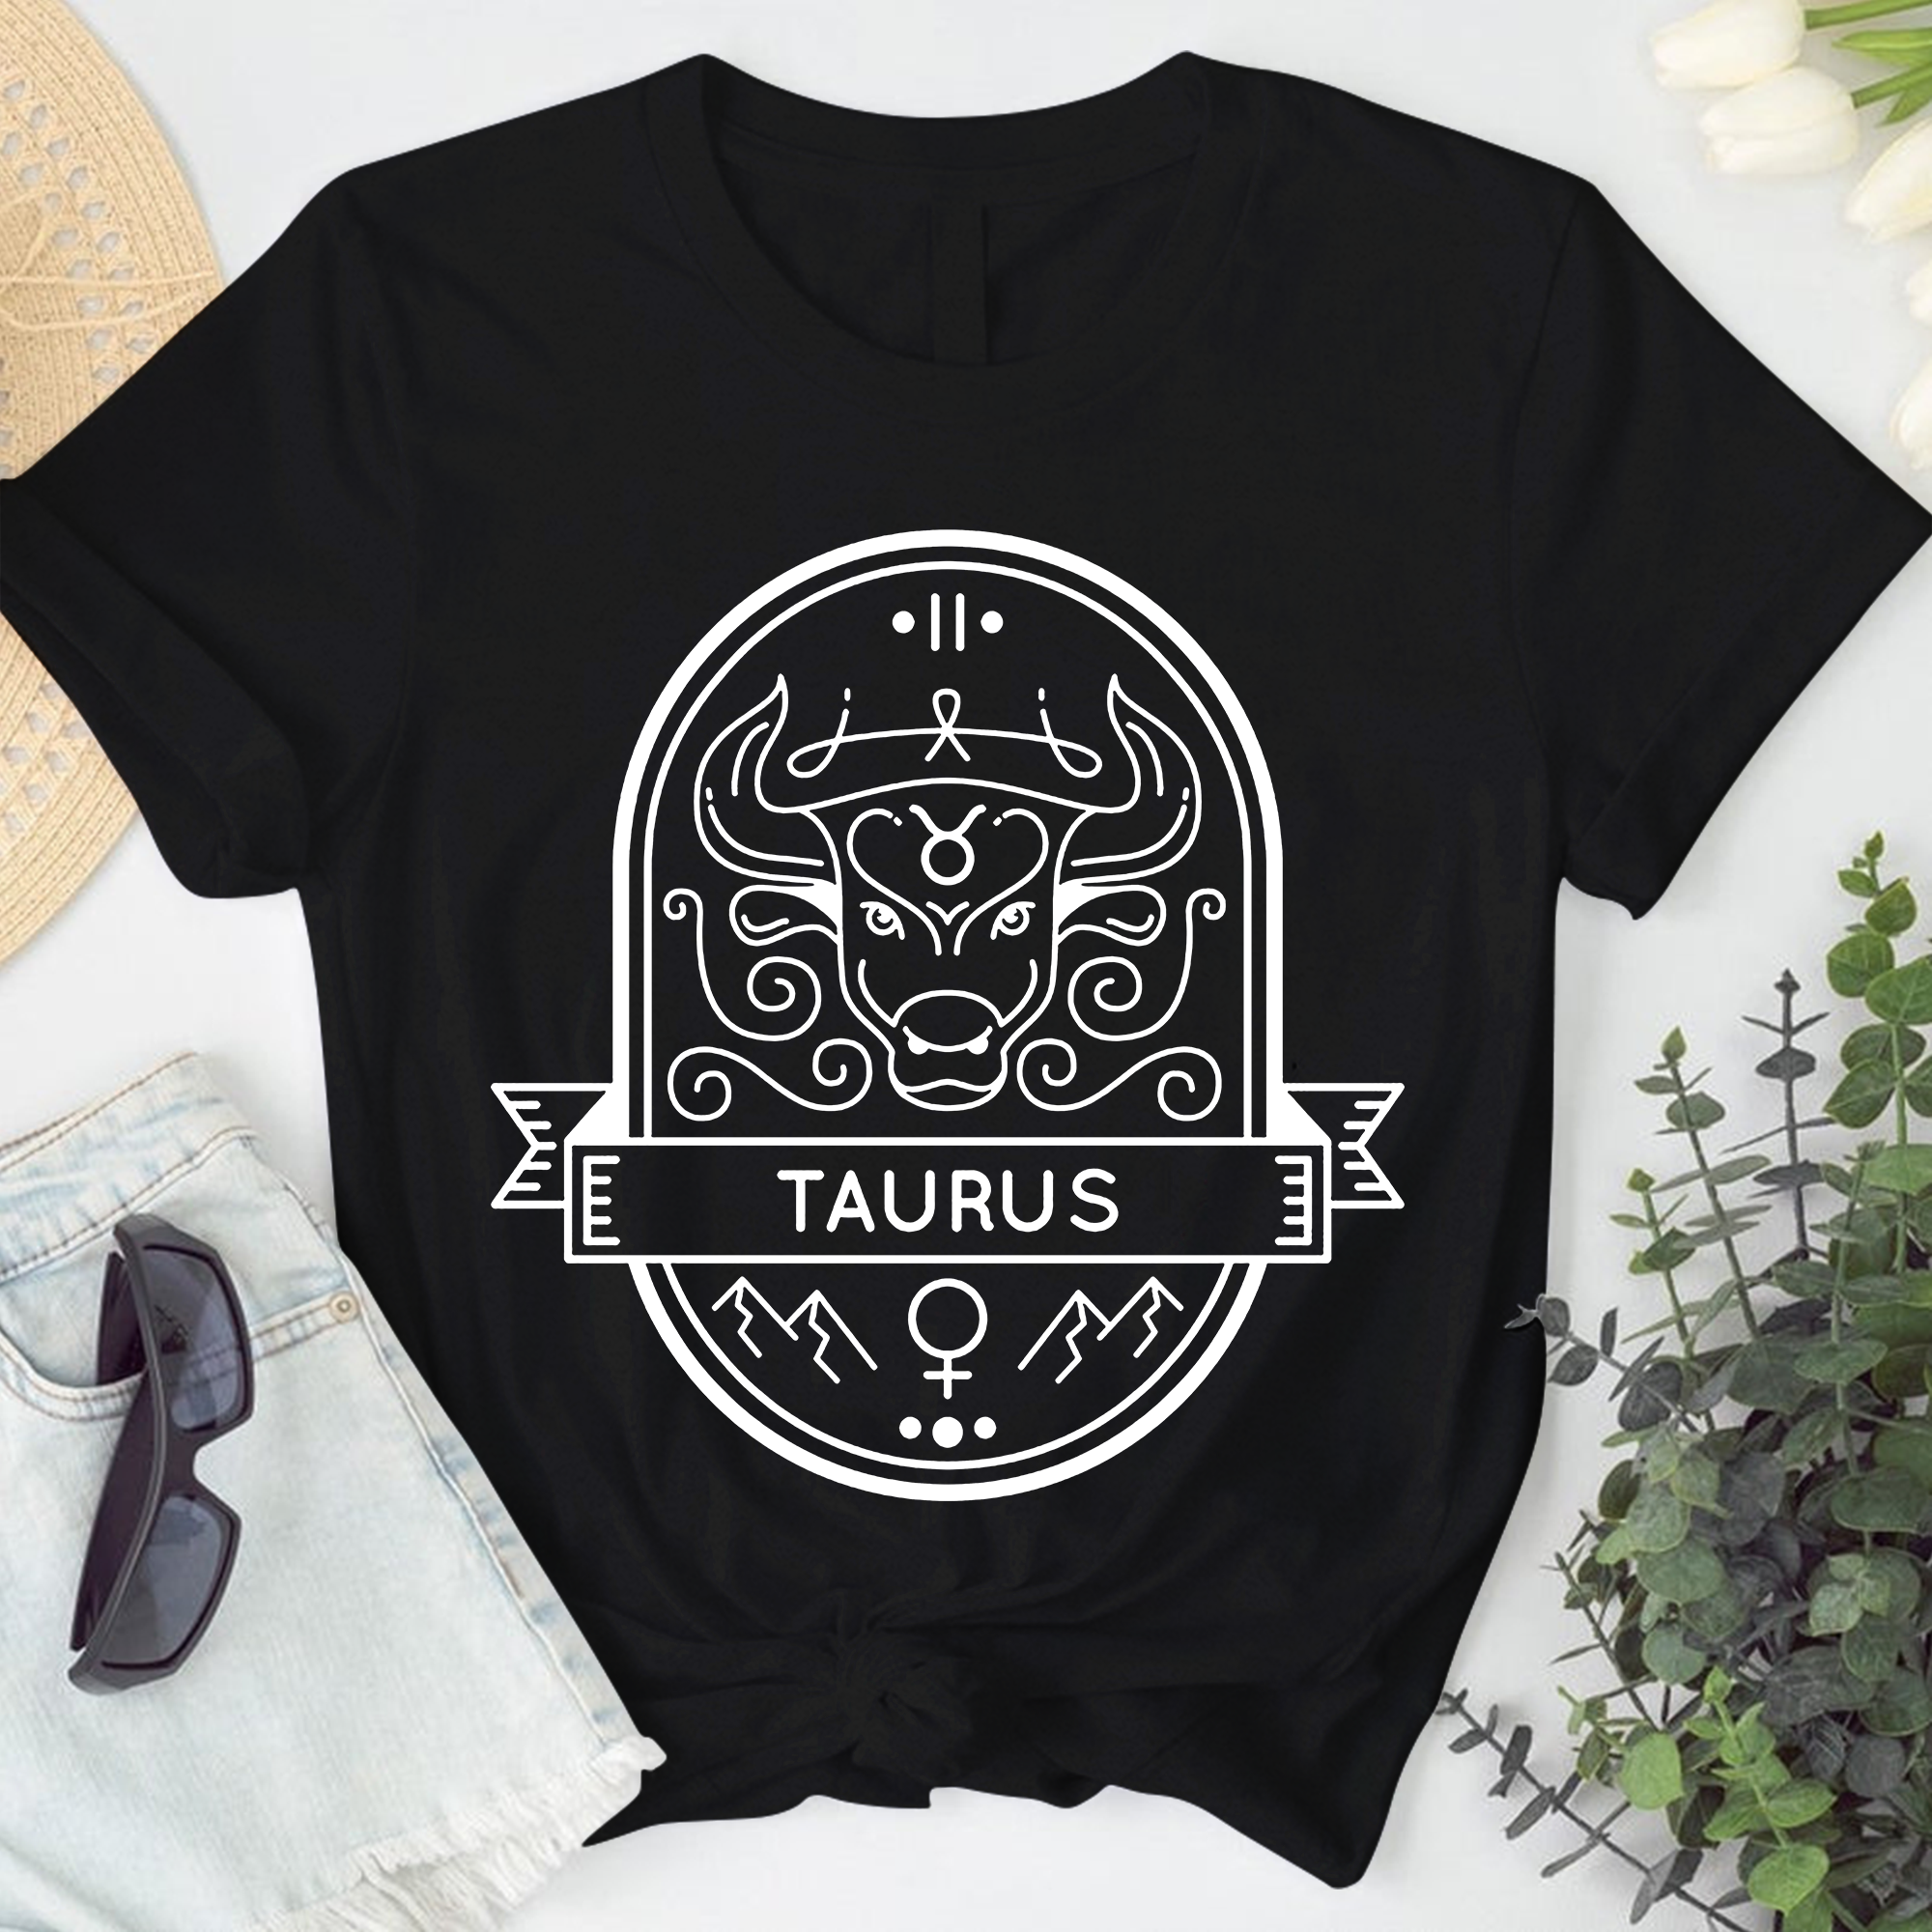 Taurus Astrology Shirt, Zodiac Taurus Birthday Gift, Horoscope Constellations Shirt